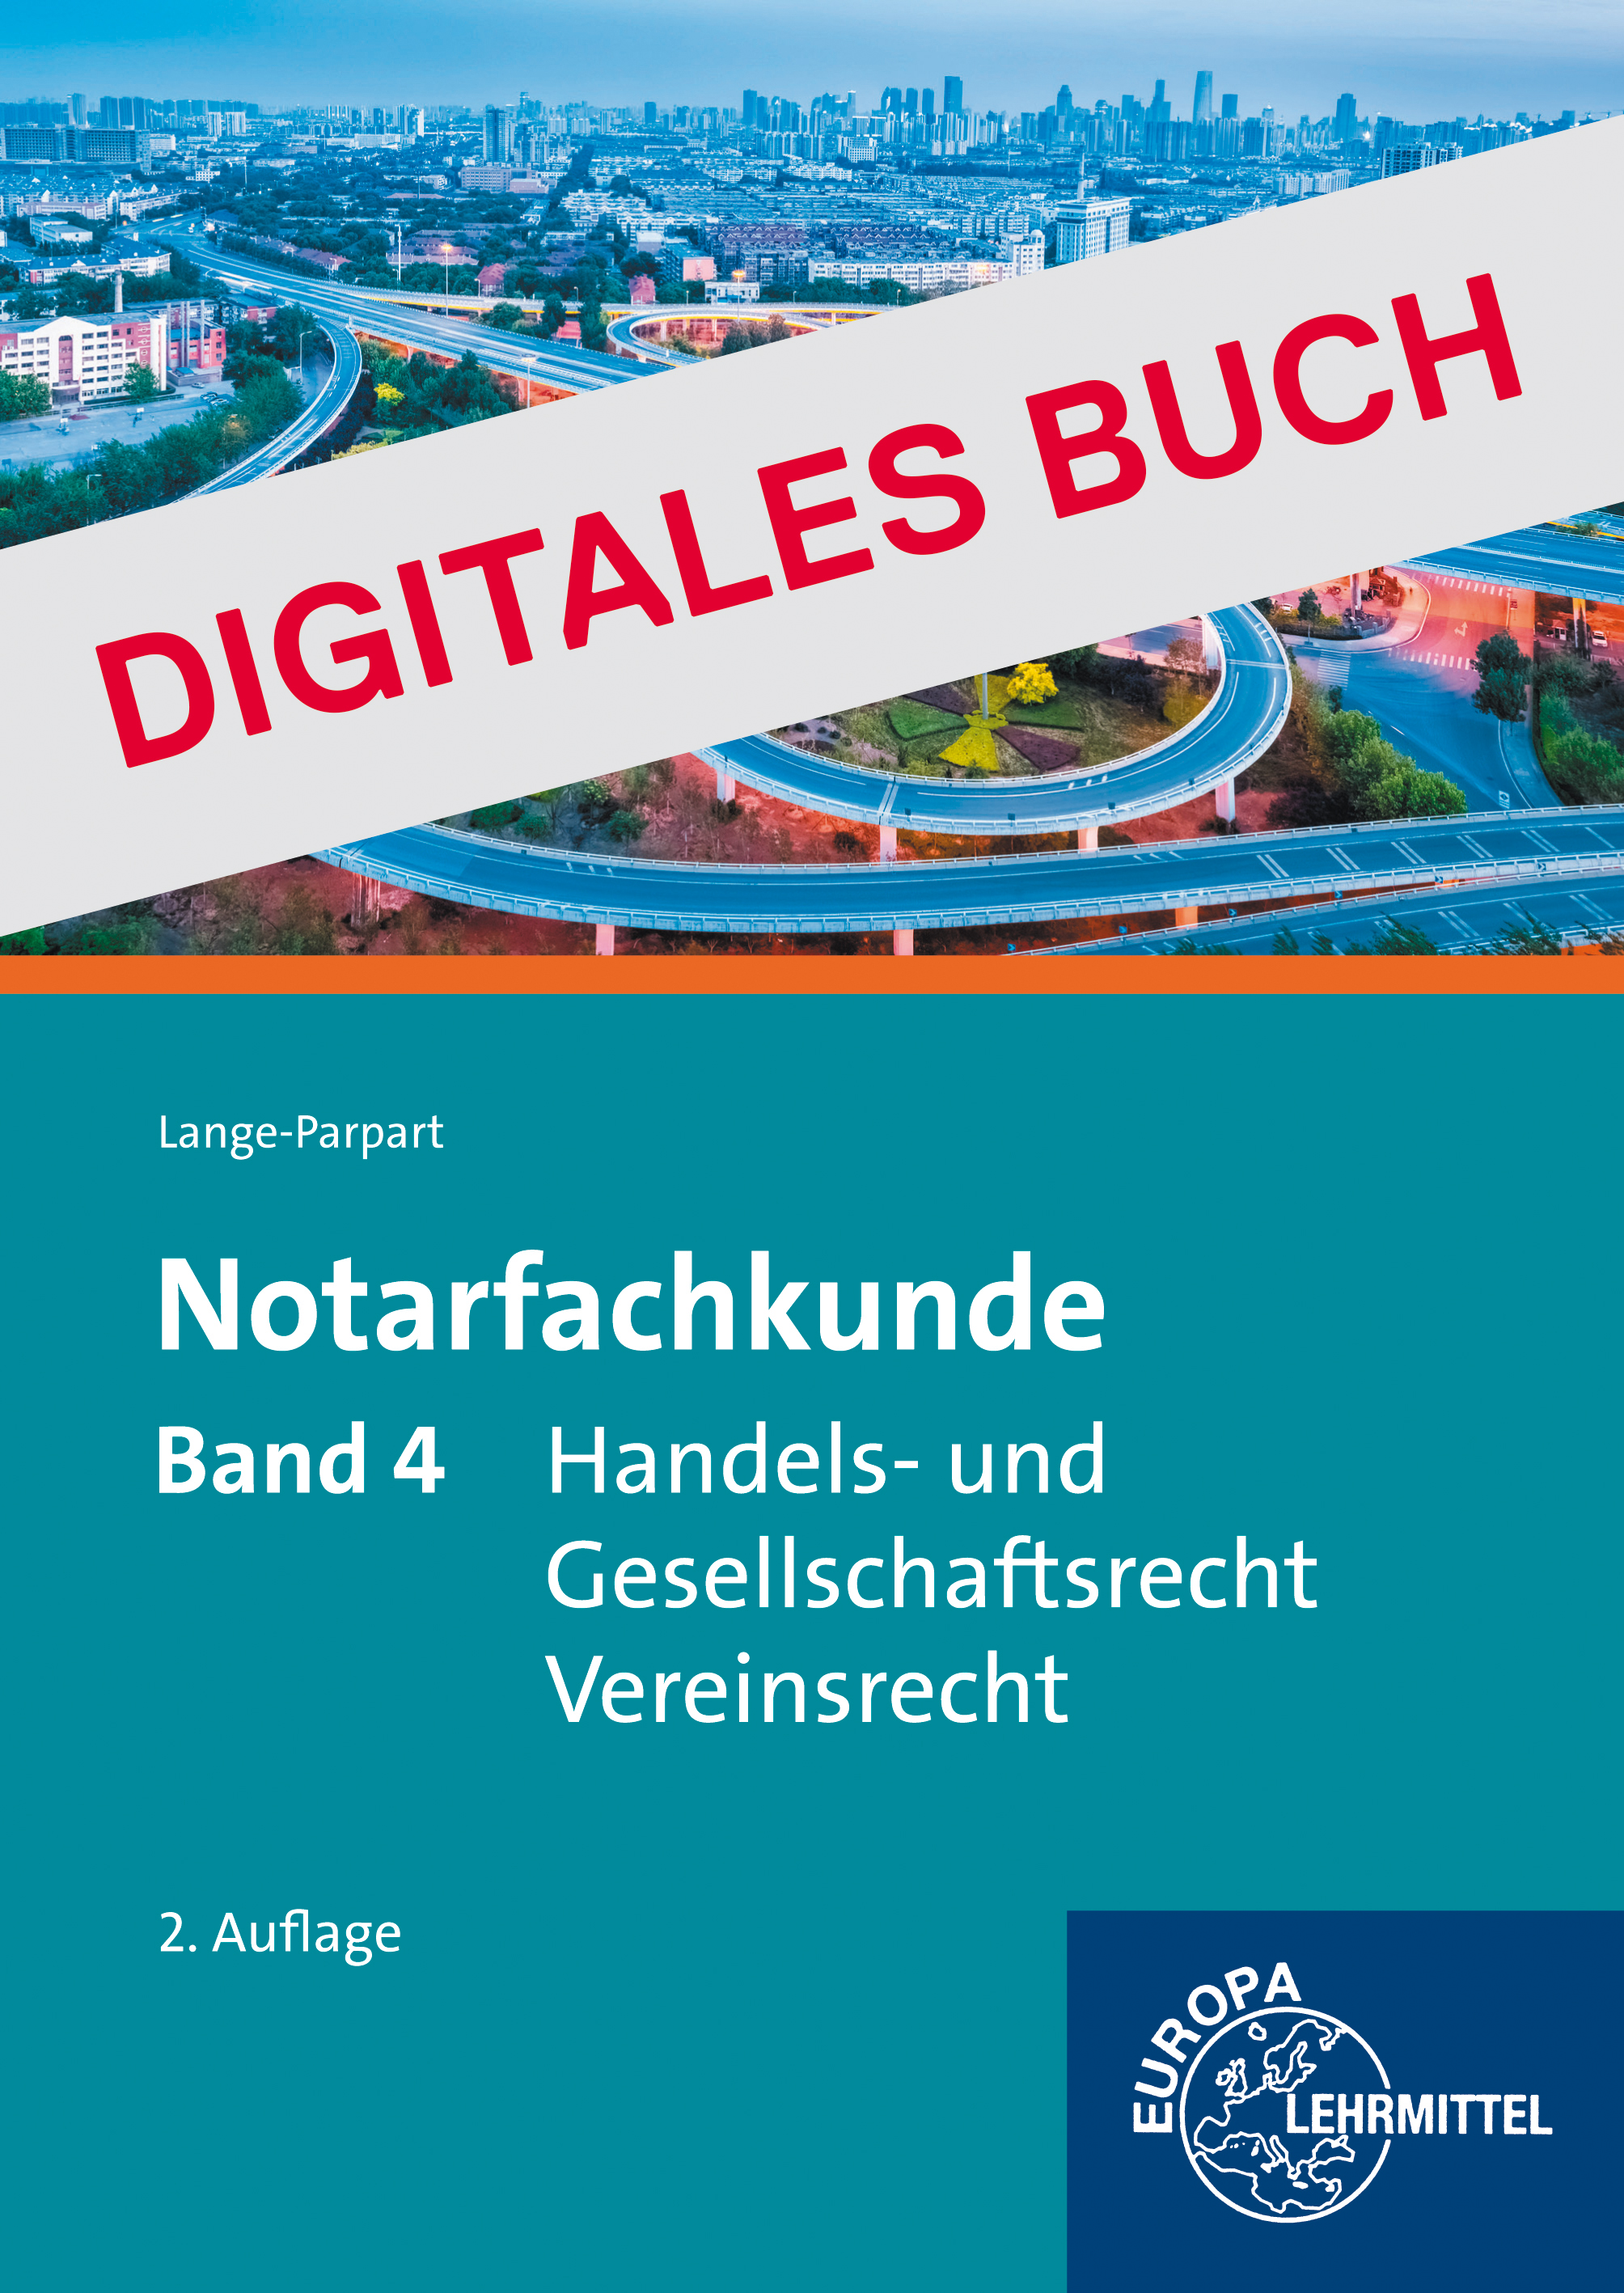 Notarfachkunde - Handels- und Gesellschaftsrecht, Vereinsrecht Band 4 -Dig. Buch